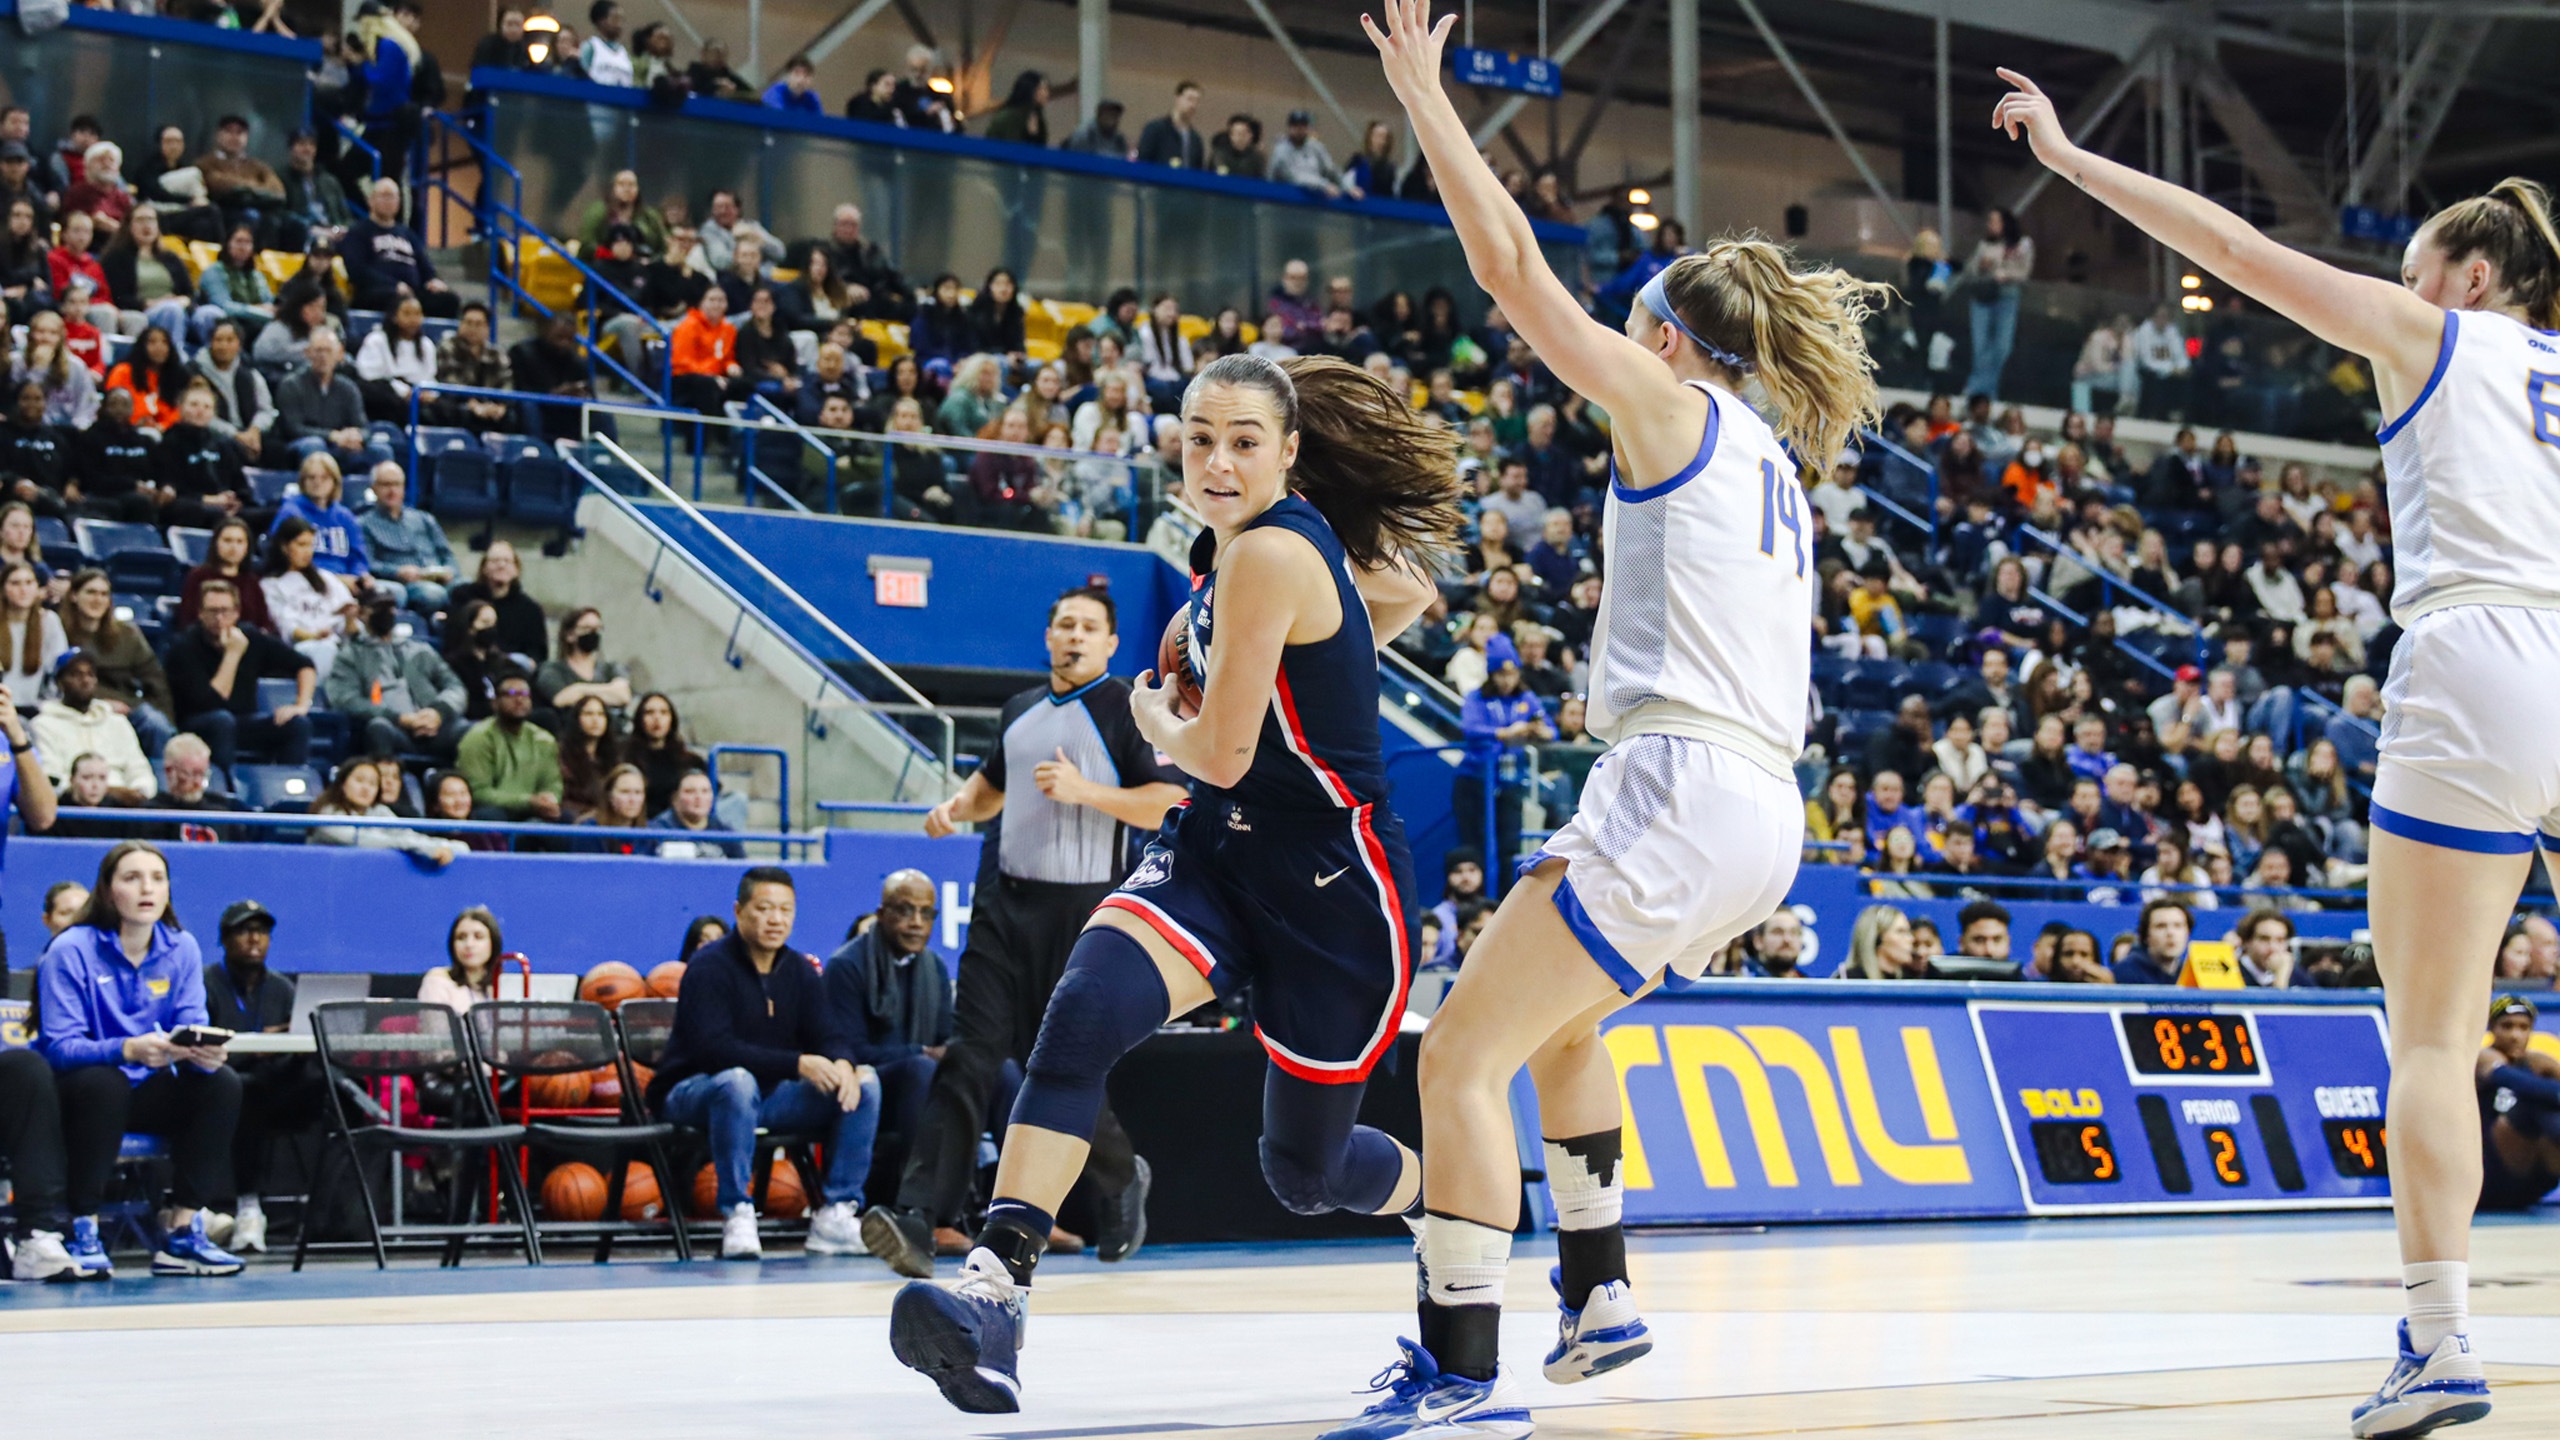 UConn Huskies women's basketball player Nika Muhl drives past TMU women's basketball player Kaillie Hall